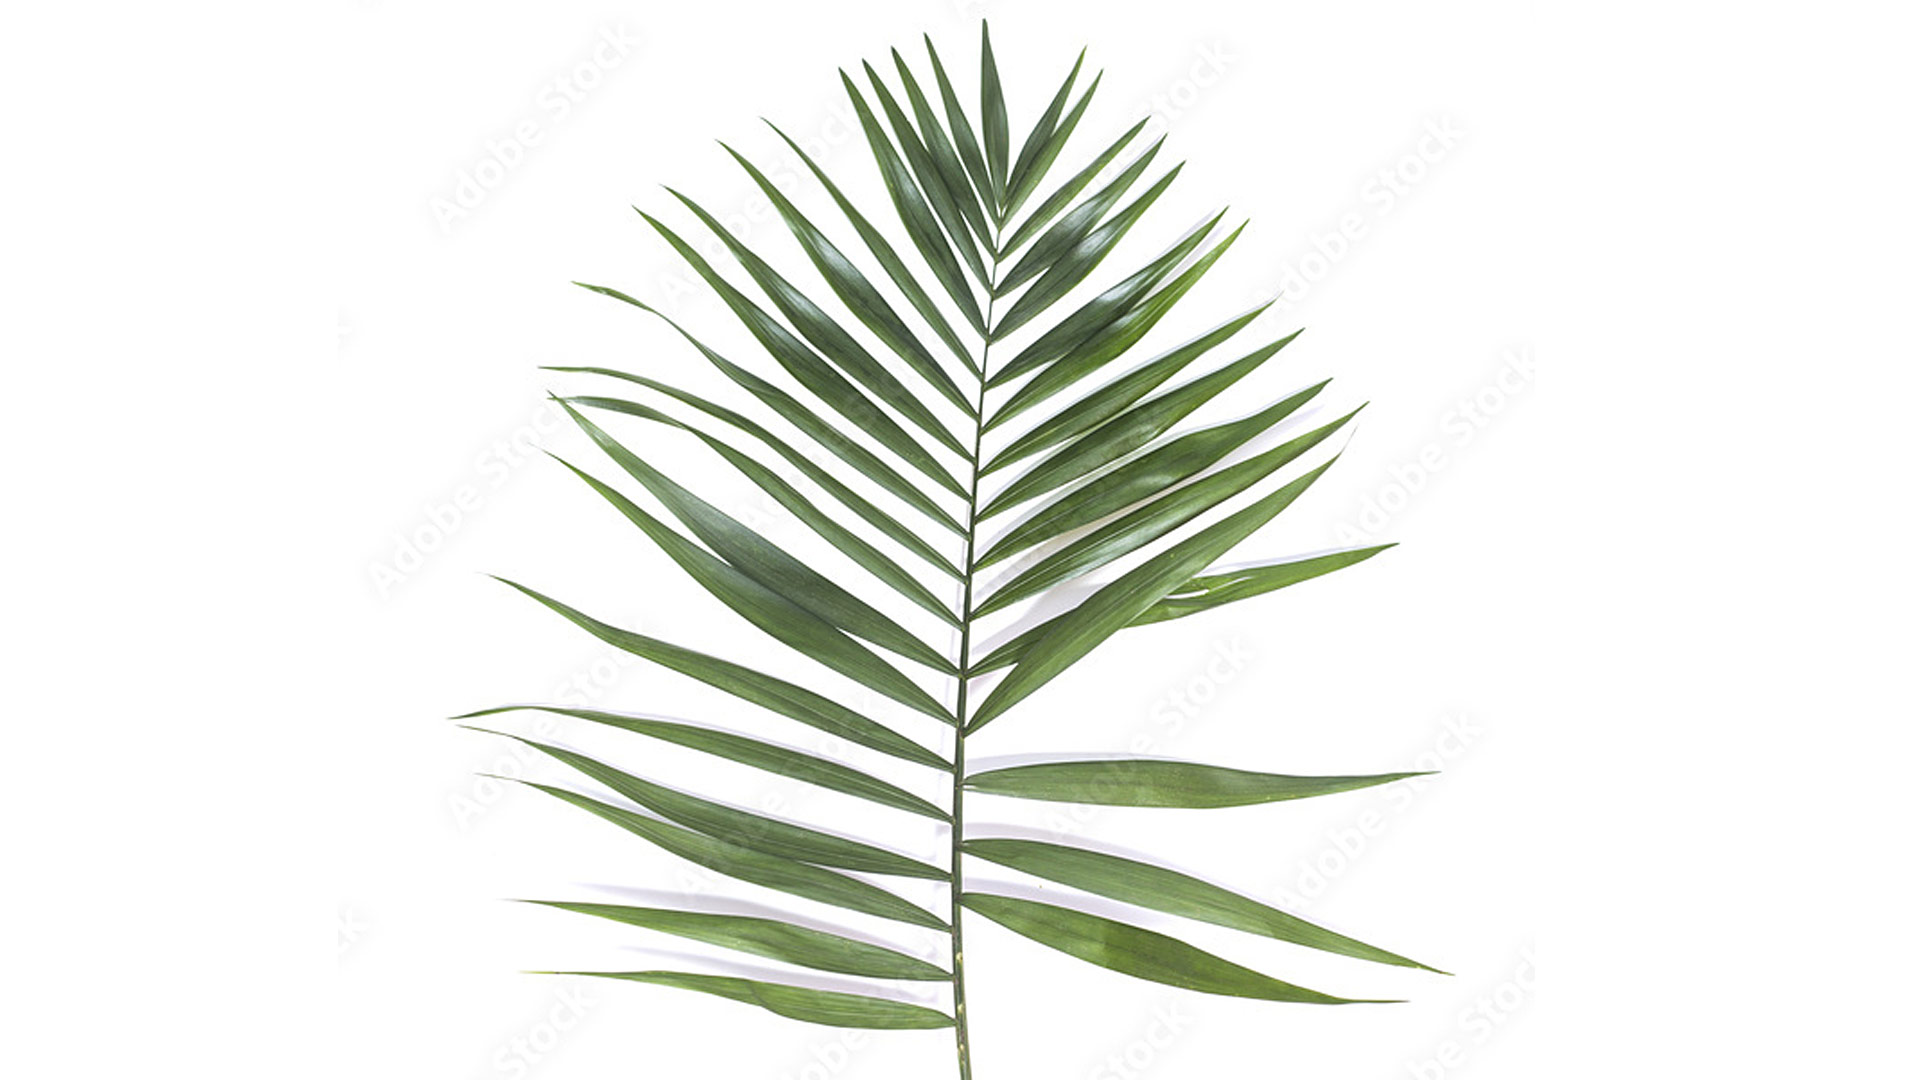 Хамедорея изящная, пальма чико (Chamaedorea elegans)